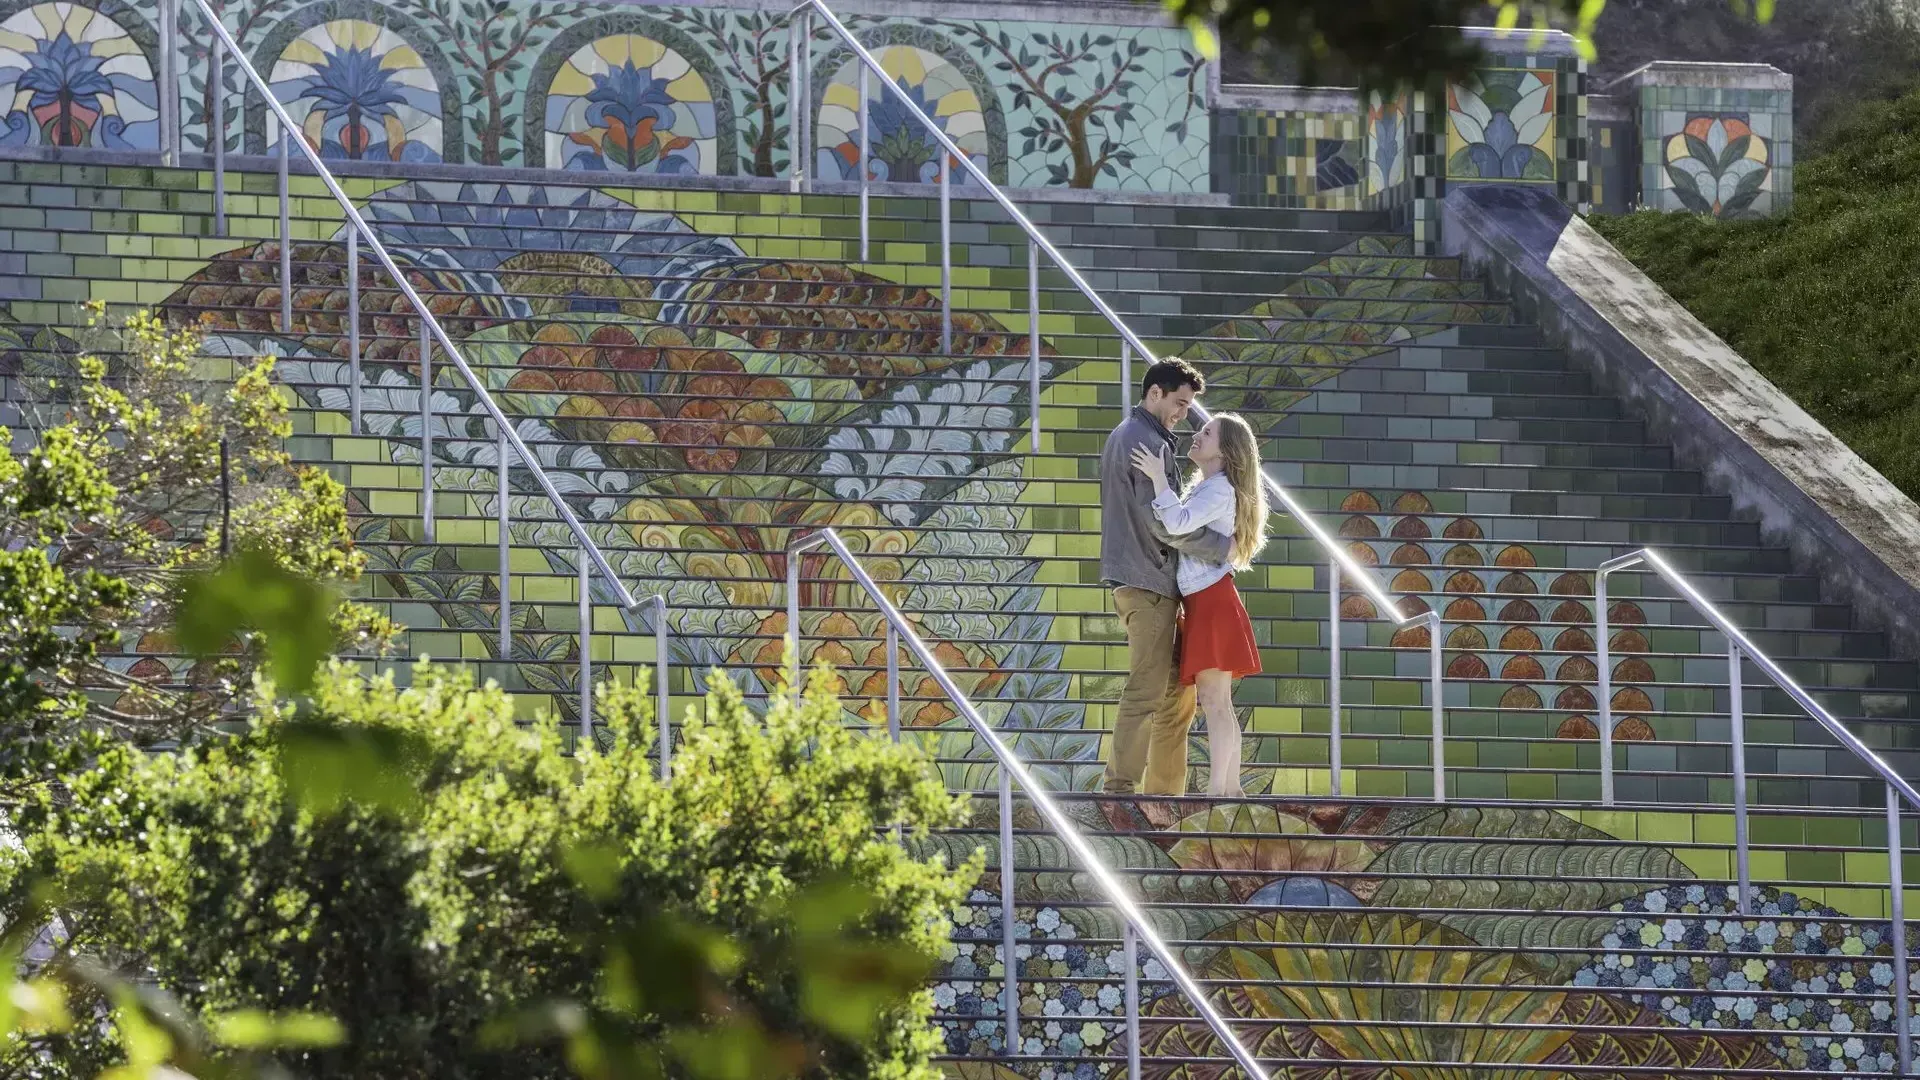 这张照片是从一对夫妇站在林肯公园五颜六色的瓷砖台阶上的角度拍摄的